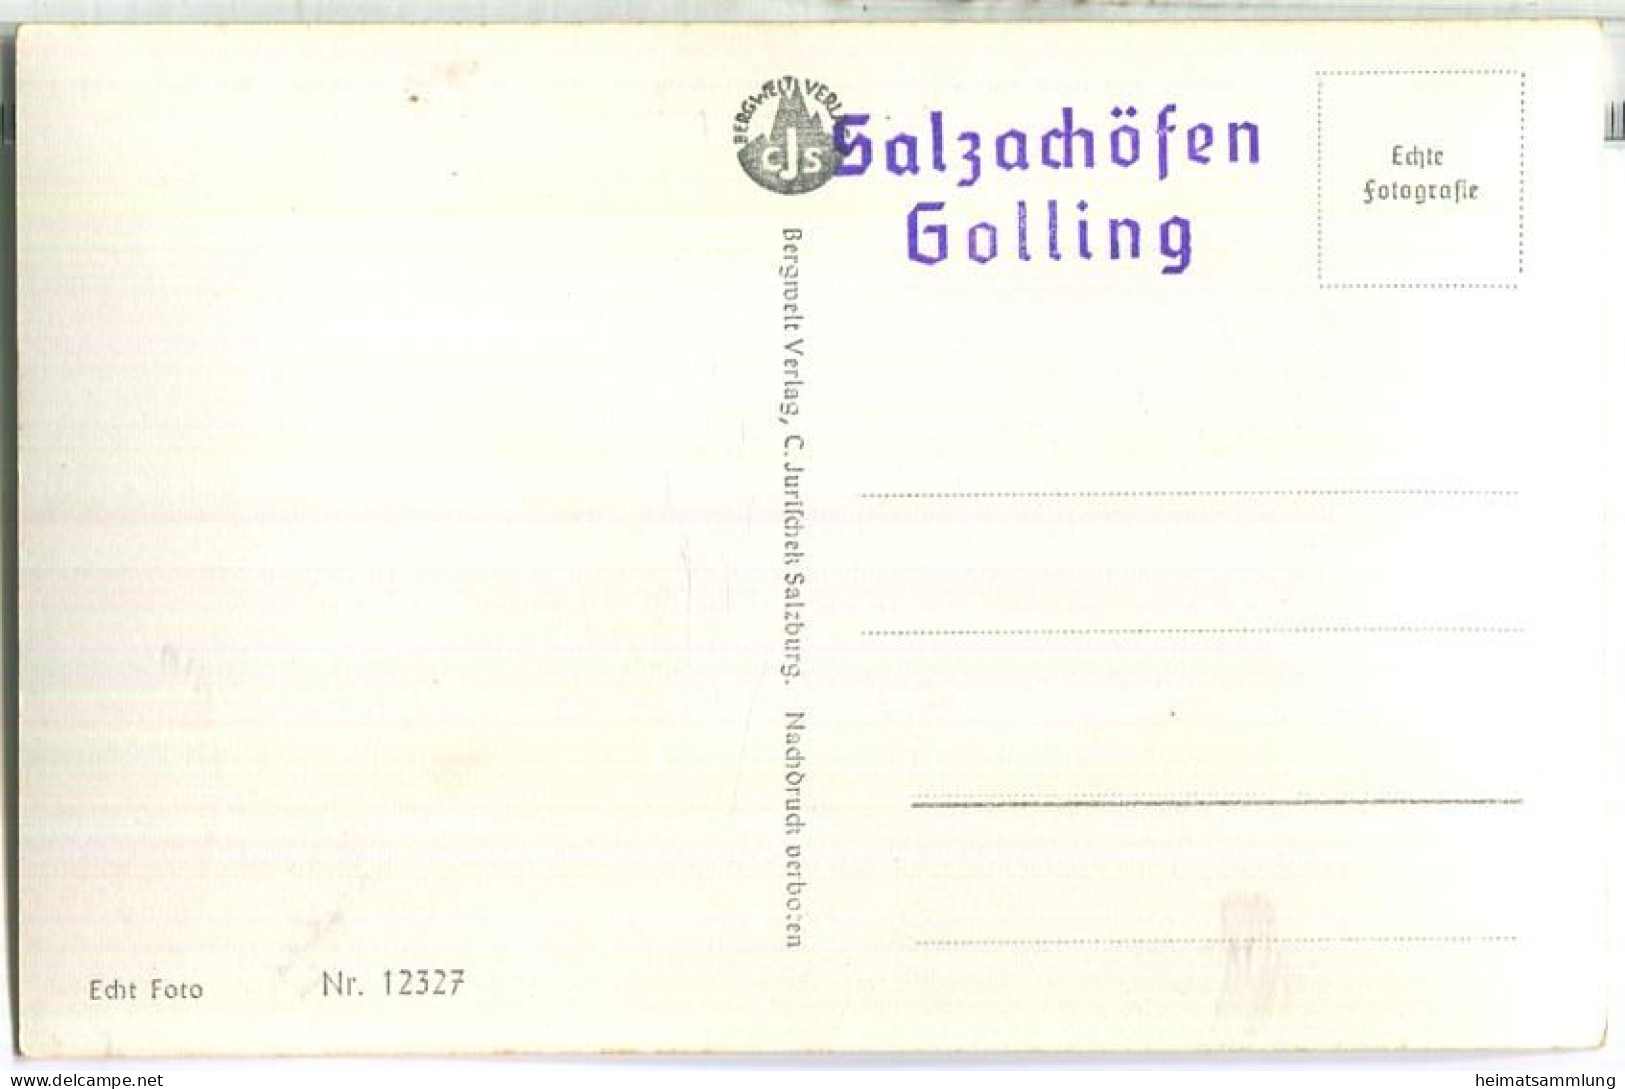 Gollinger Wasserfall - Foto-Ansichtskarte - Verlag C. Jurischek Salzburg - Golling